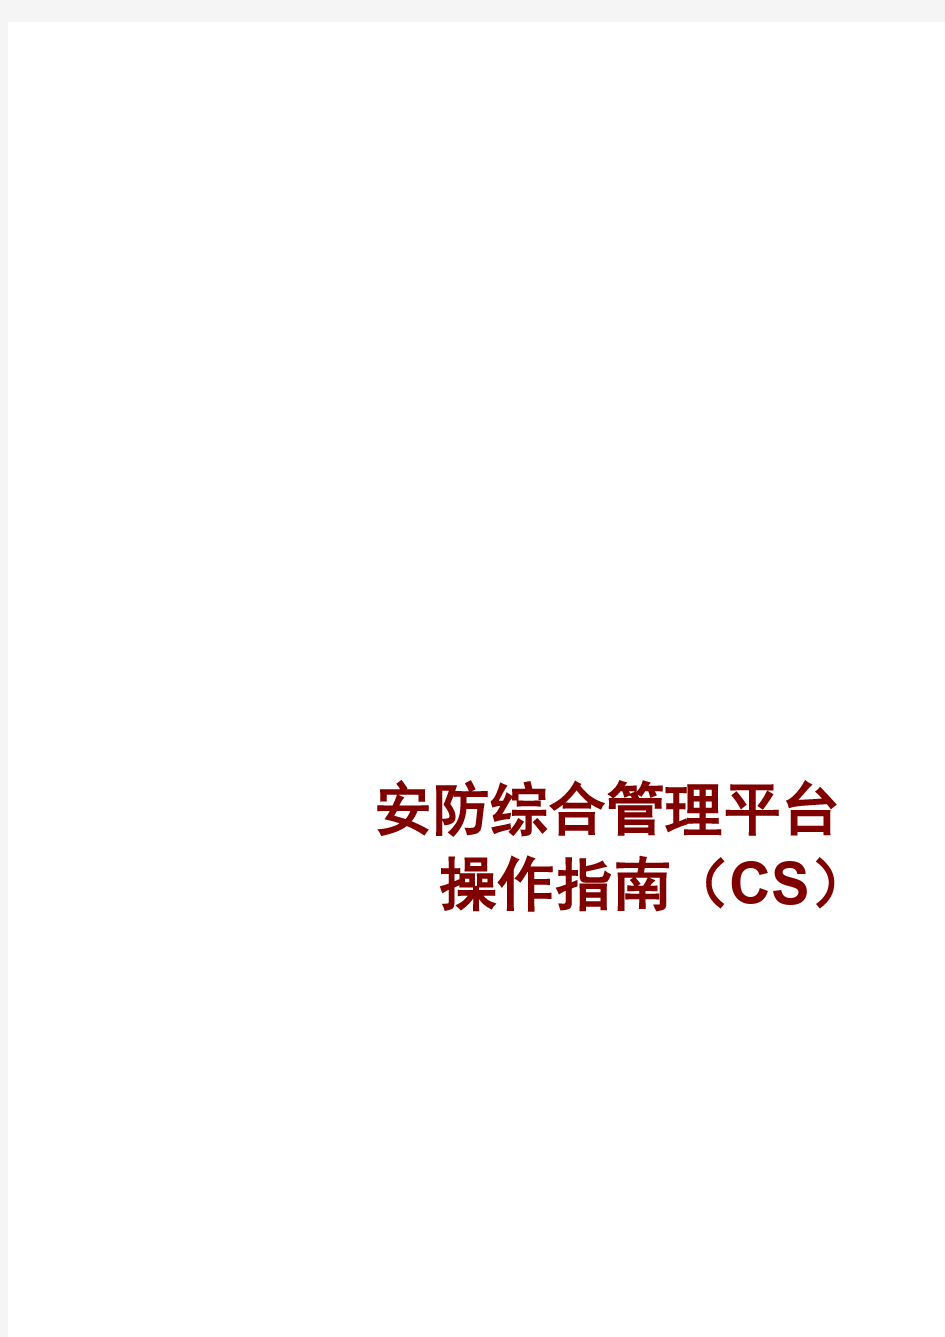 海康威视8700_安防综合管理平台 操作指南(CS)V2.1